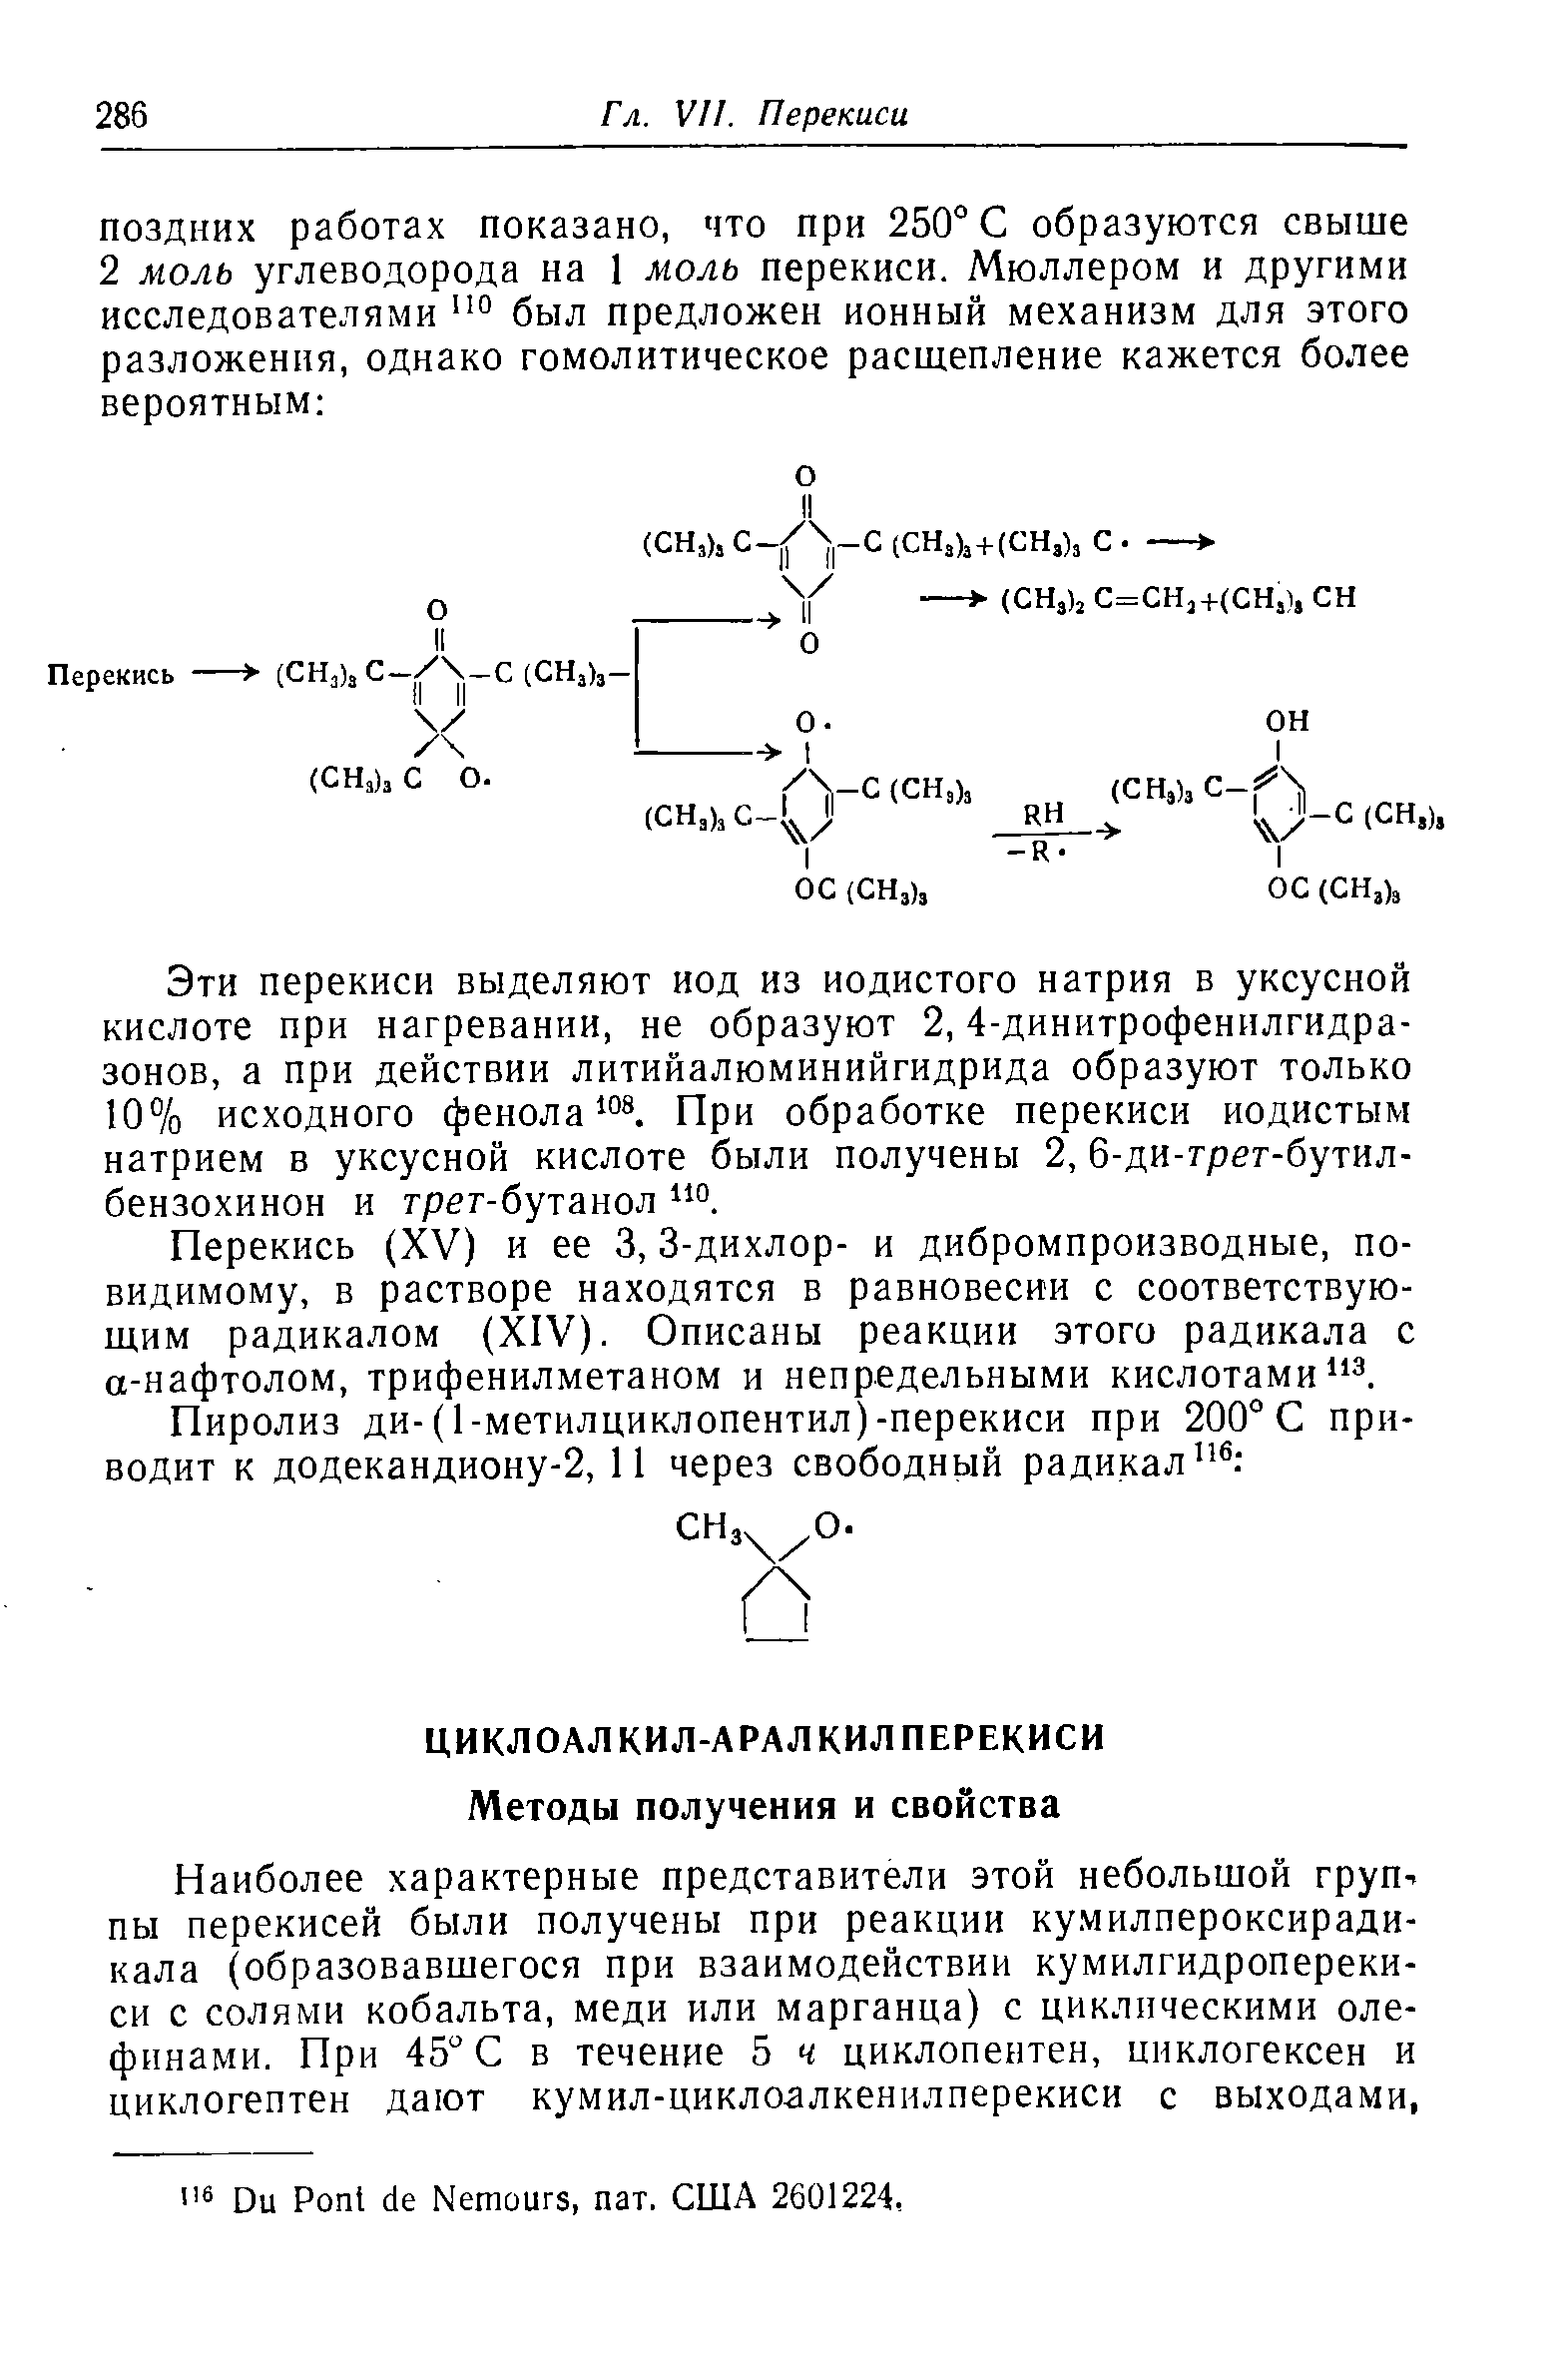 Перекись (XV) и ее 3, 3-дихлор- и дибромпроизводные, по-видимому, в растворе находятся в равновесии с соответствующим радикалом (XIV). Описаны реакции этого радикала с а-нафтолом, трифенилметаном и непредельными кислотами з.